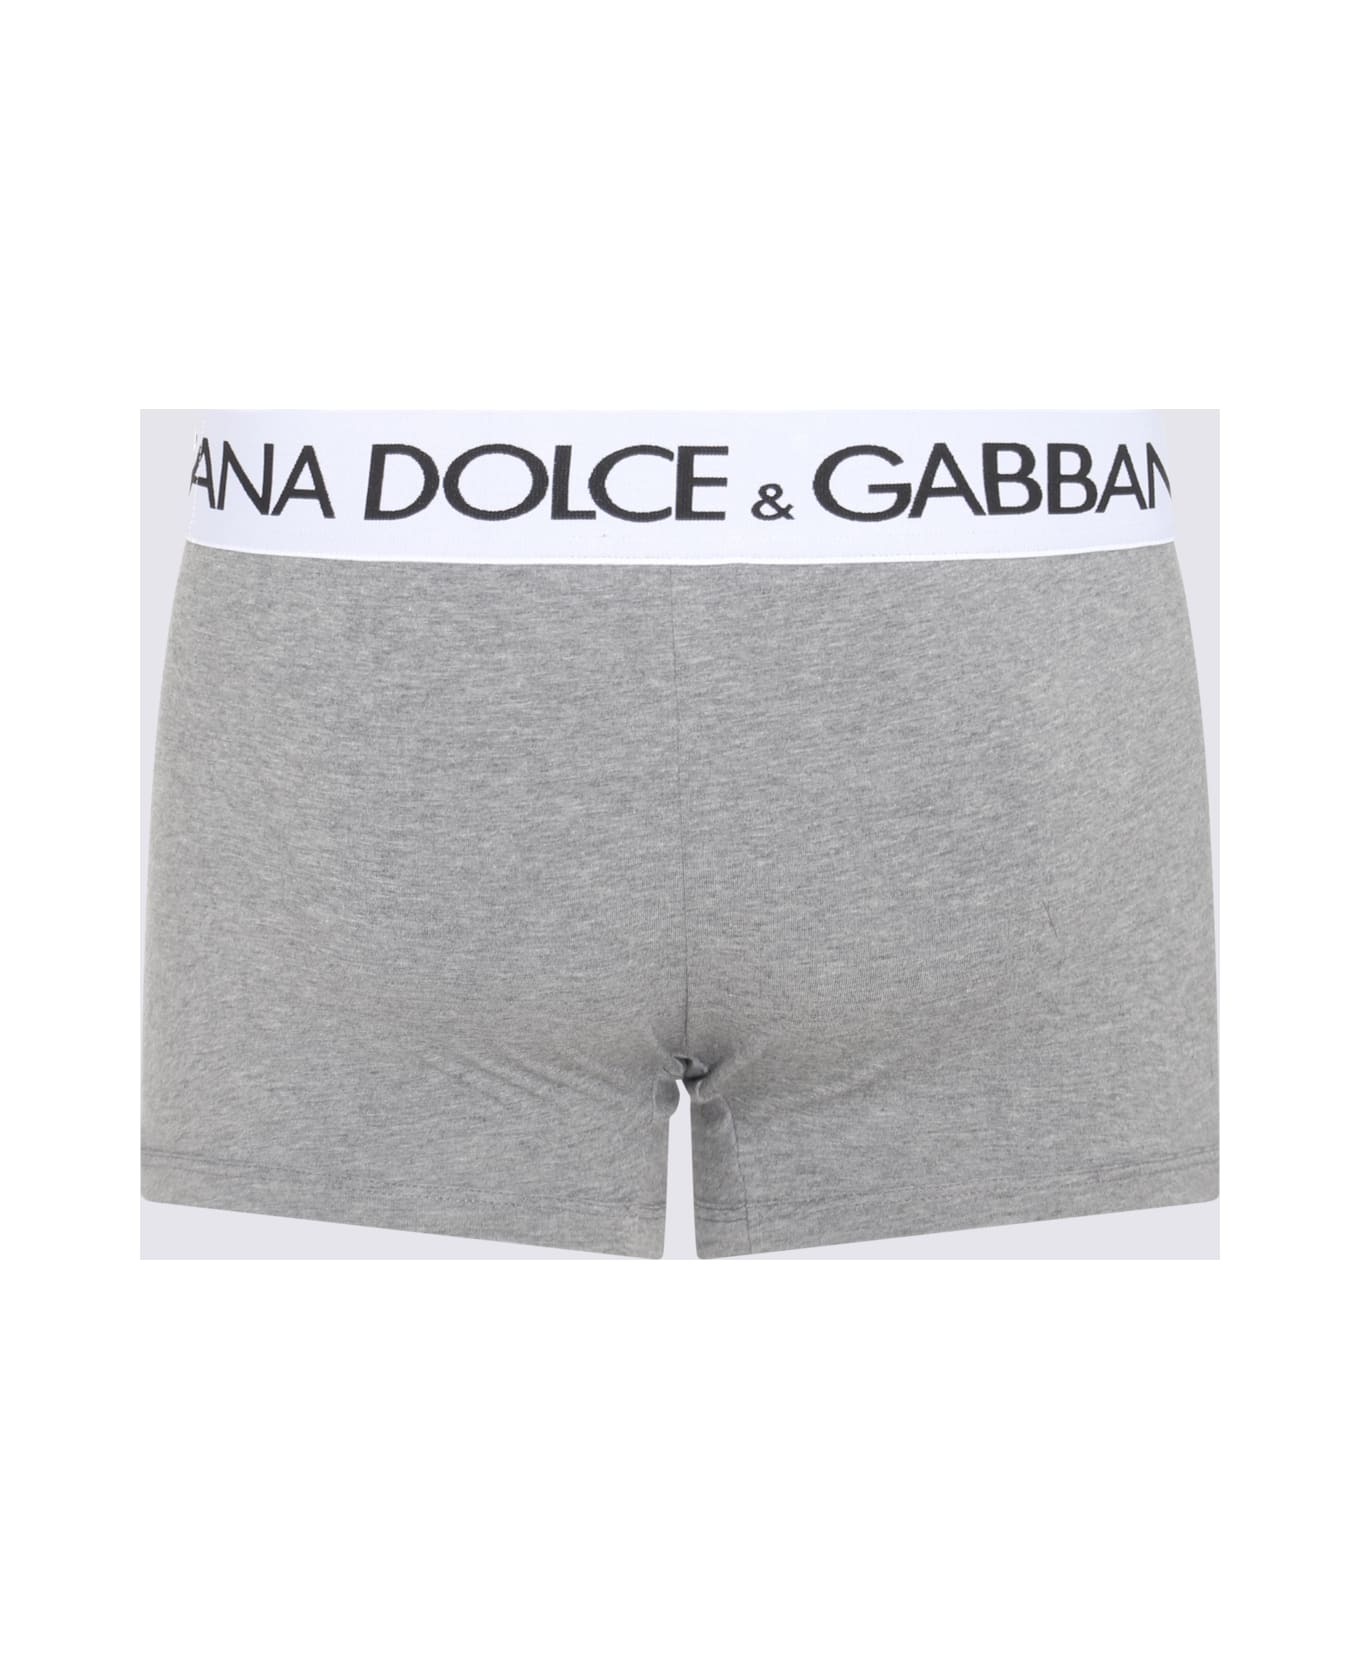 Dolce & Gabbana Grey Cotton Blend Boxers - MELANGE GRIGIO